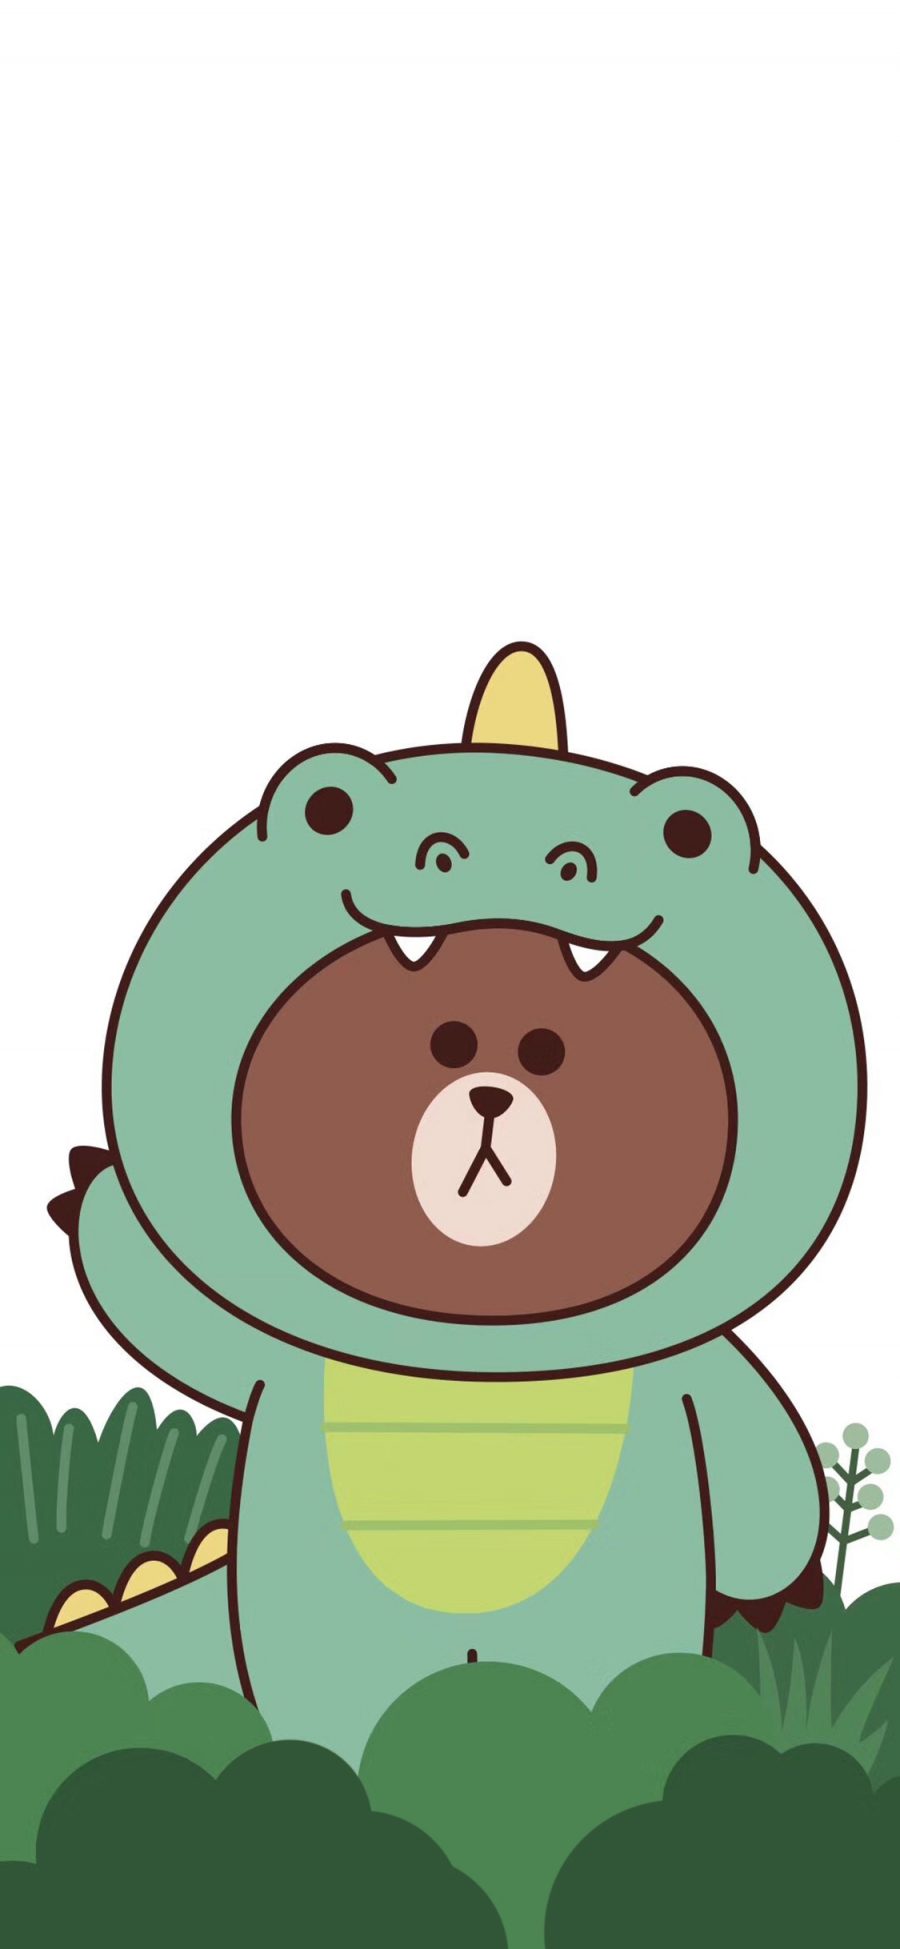 [2436×1125]布朗熊 可爱 卡通 鳄鱼服 line friends 苹果手机动漫壁纸图片